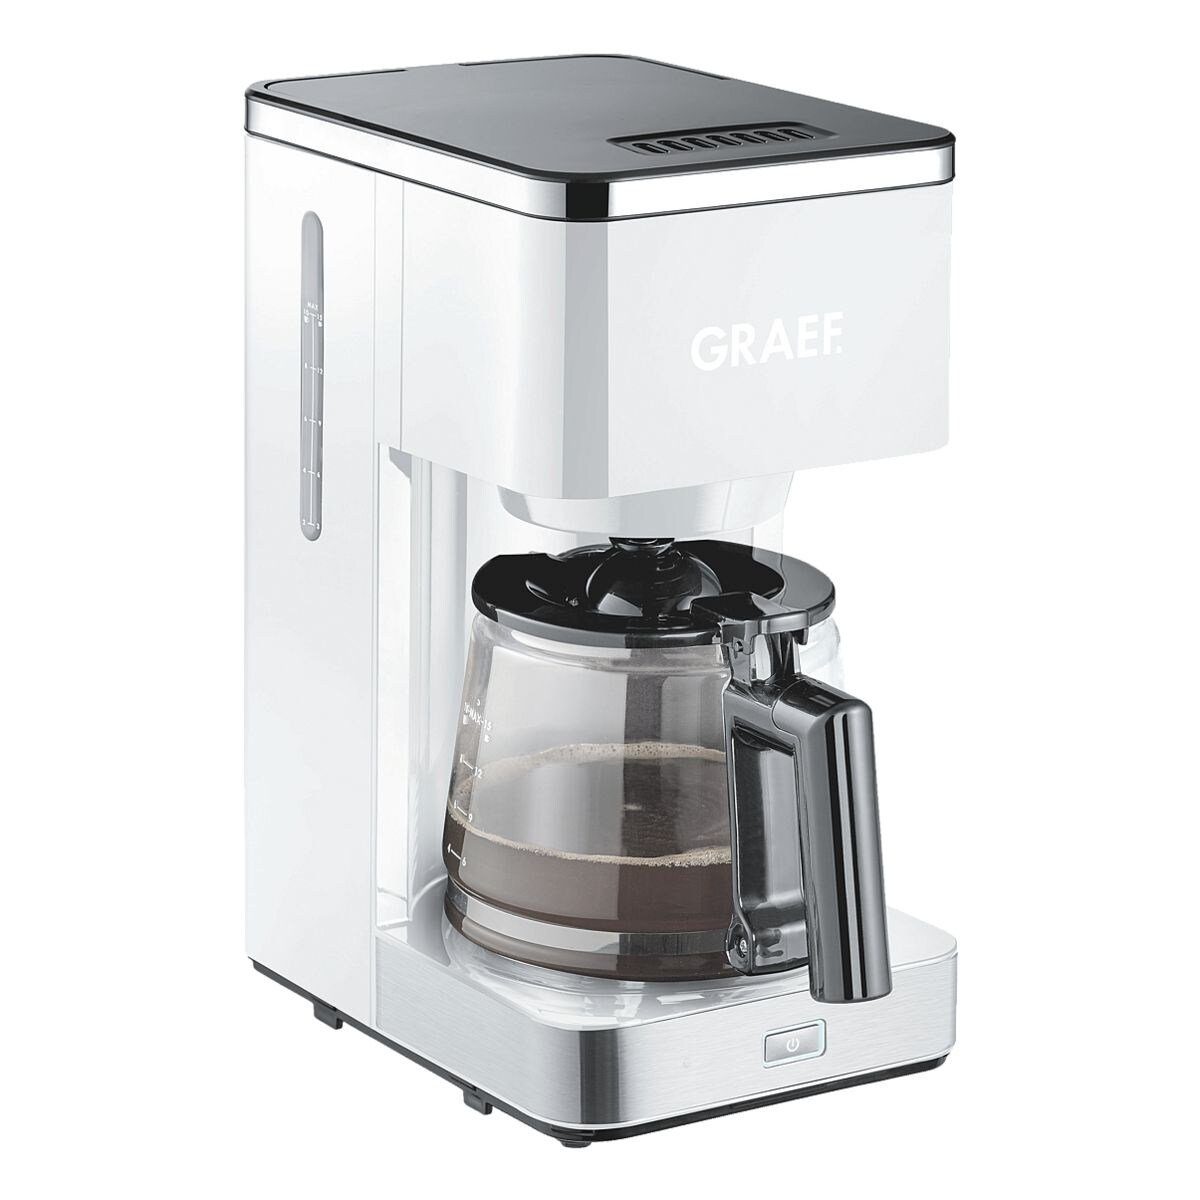 Graef Filterkaffeemaschine FK401, 1.25l Kaffeekanne, Kaffeemaschine bis 15 Tassen, mit Glaskanne, 1000 Watt